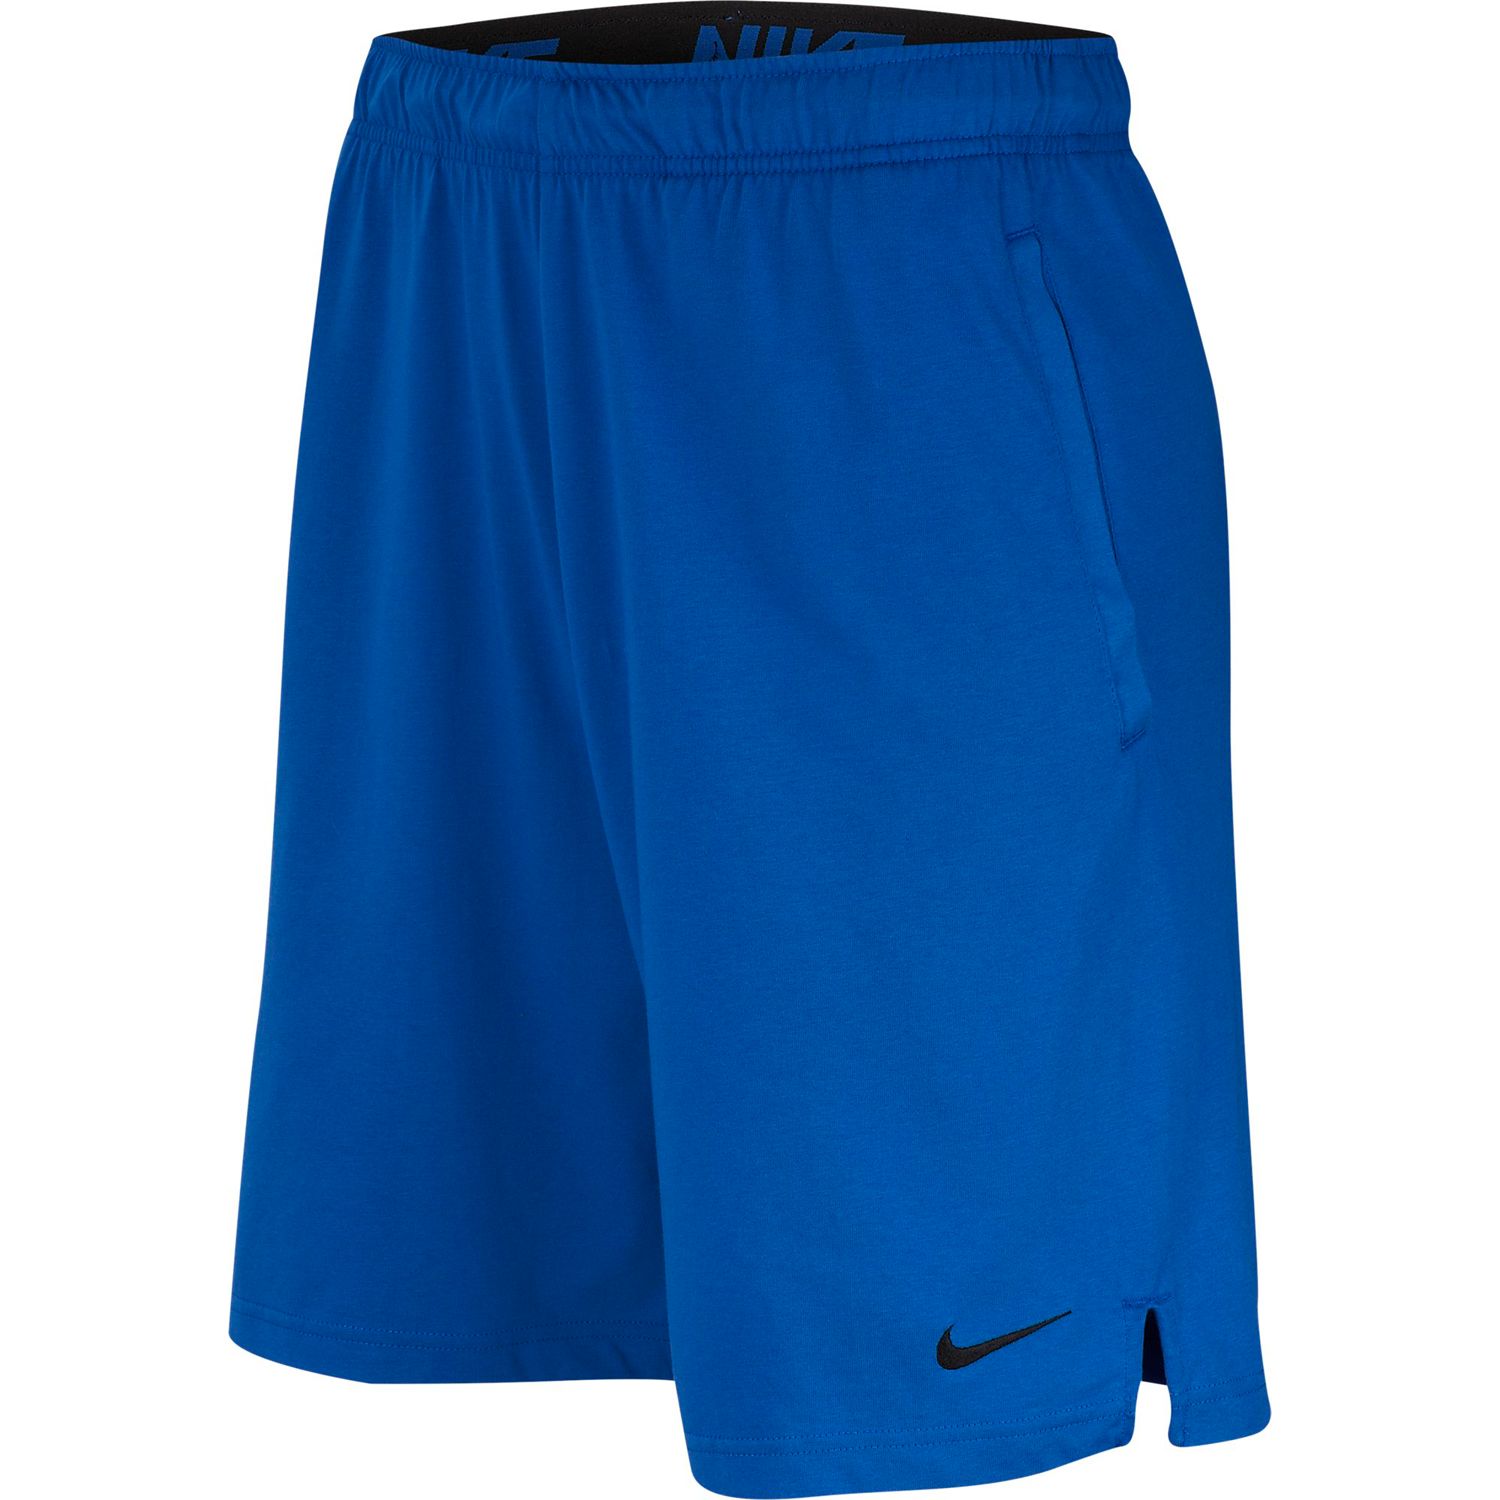 Men's Nike Dri-FIT Cotton Shorts